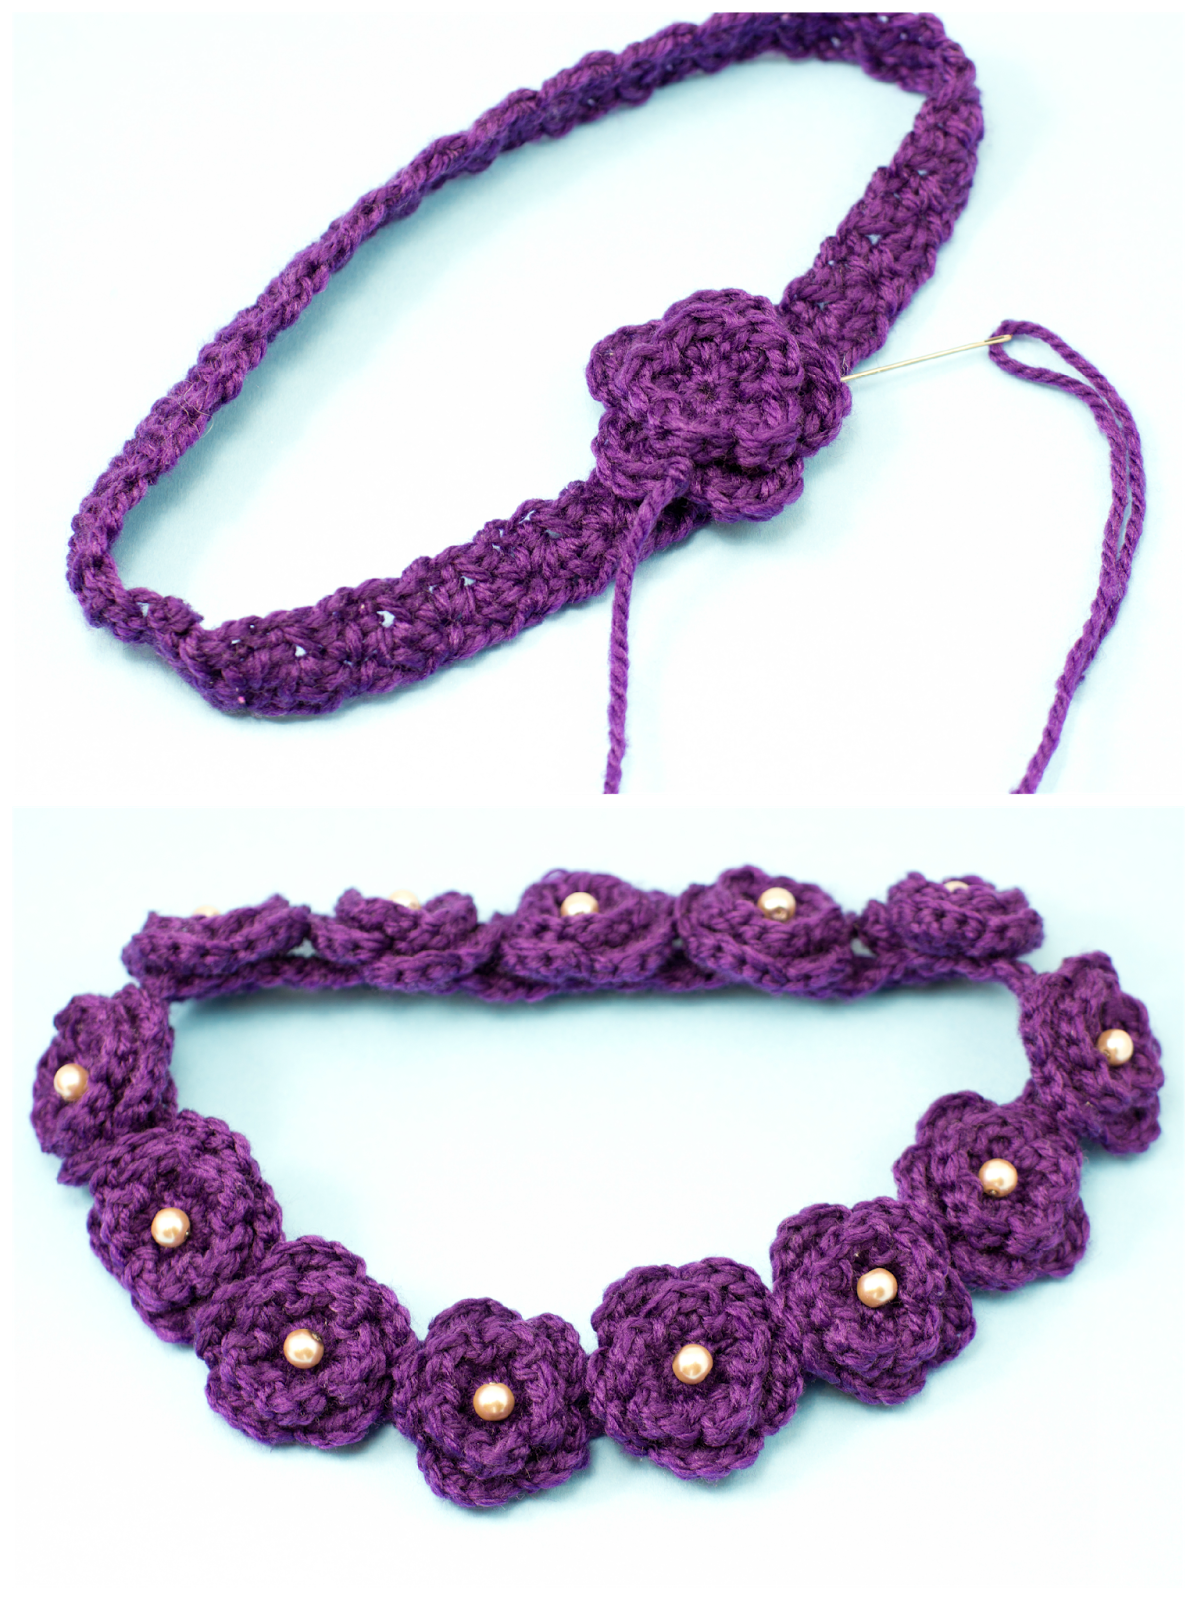 http://4.bp.blogspot.com/-ML9Svc36zbM/U08jwFK_AoI/AAAAAAAAItw/NbQAAkHxFHc/s1600/Daisy+Flower+Crown+Crochet+Pattern+8.png